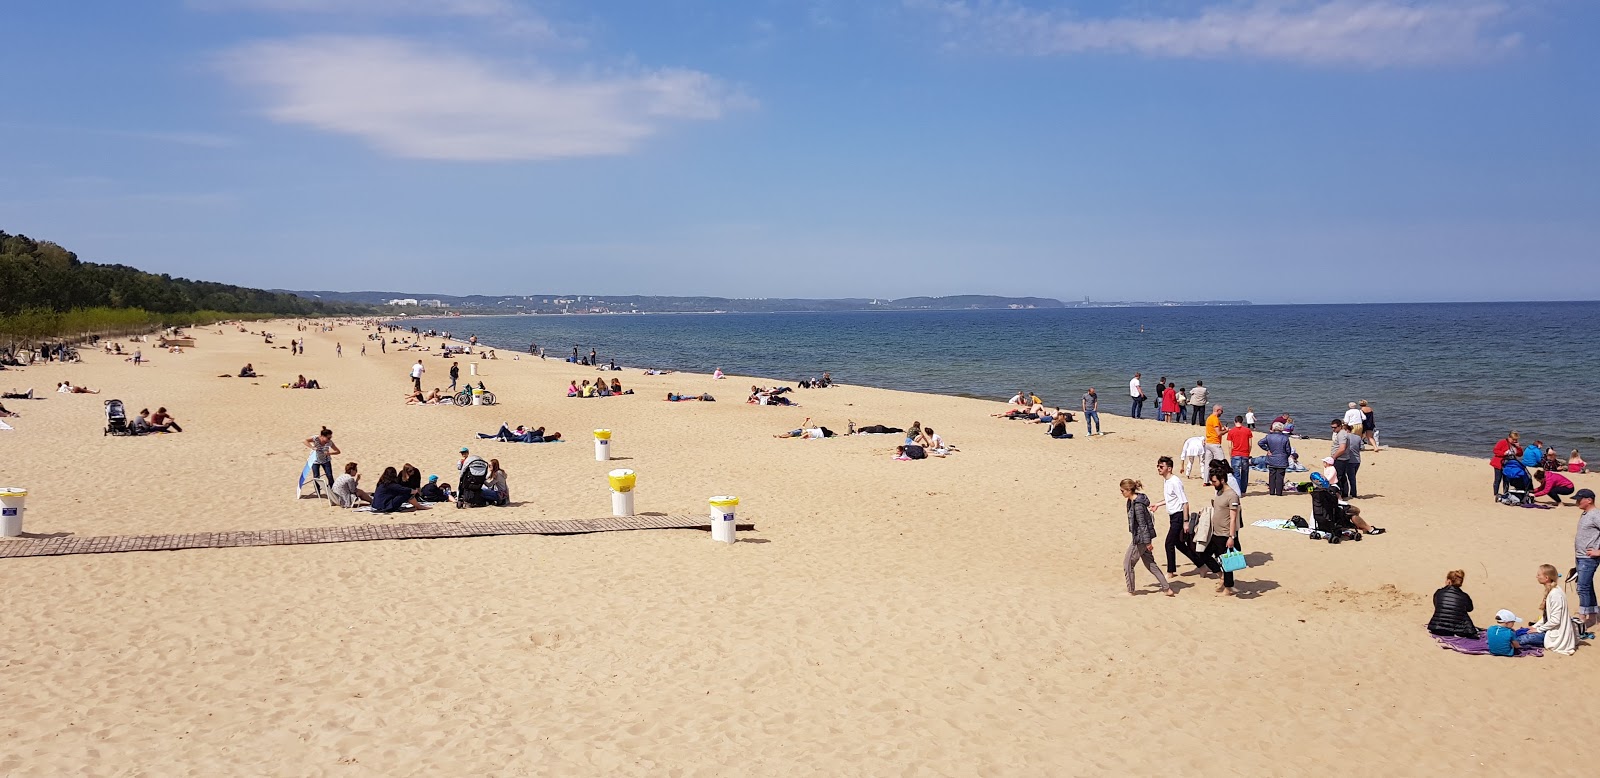 Brzezno Pier Beach'in fotoğrafı geniş plaj ile birlikte